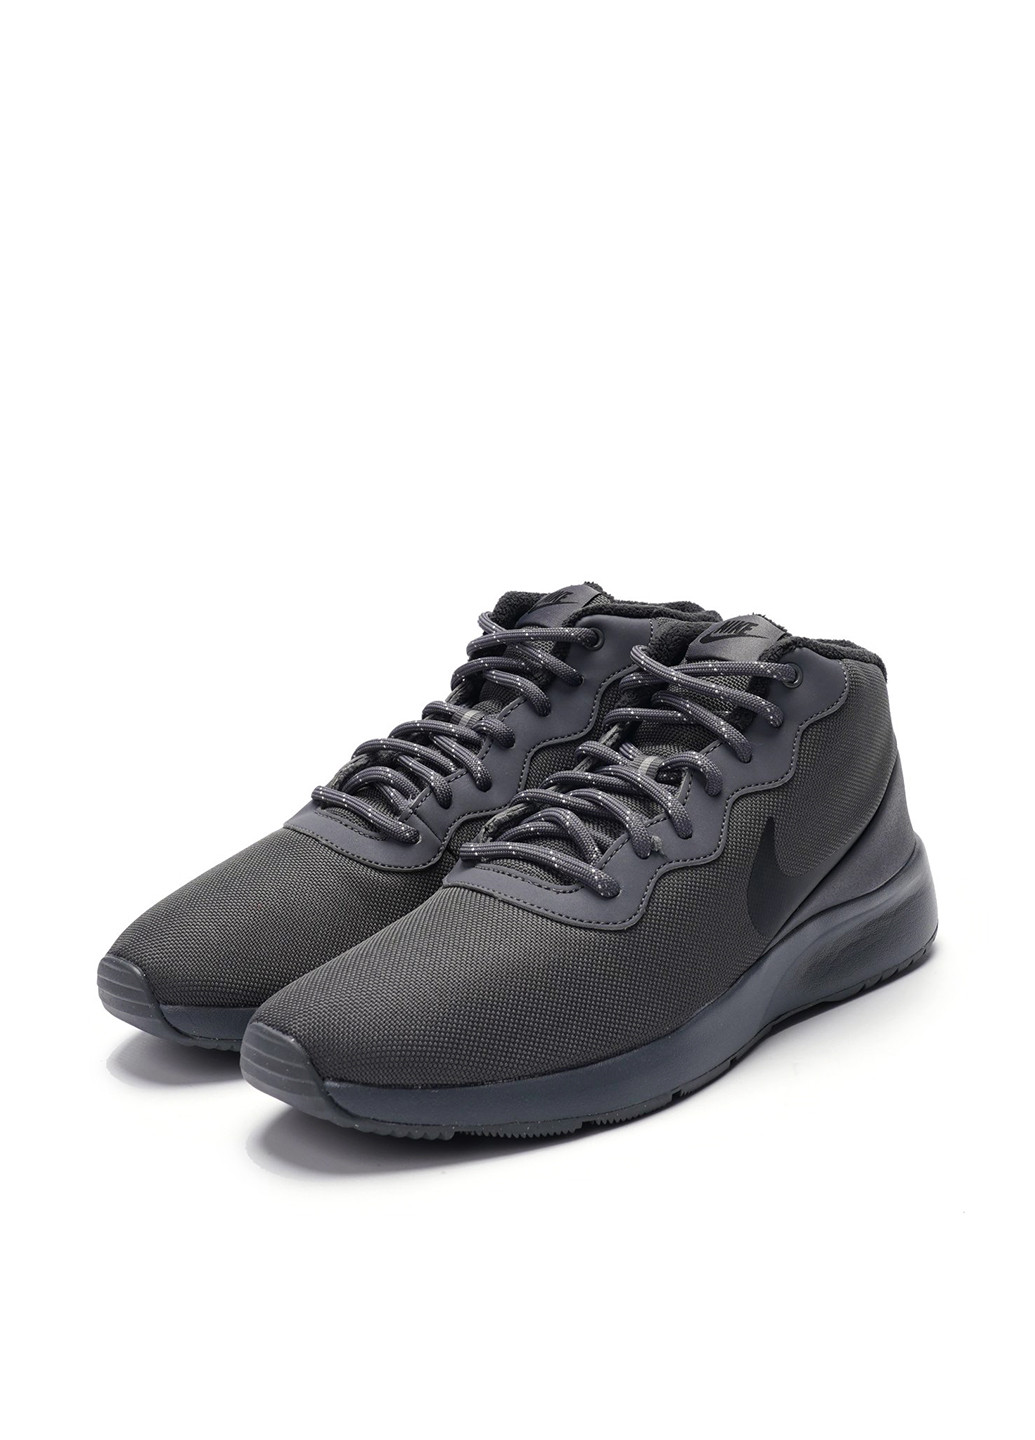 Черные демисезонные кроссовки Nike Men's Tanjun Chukka Shoe